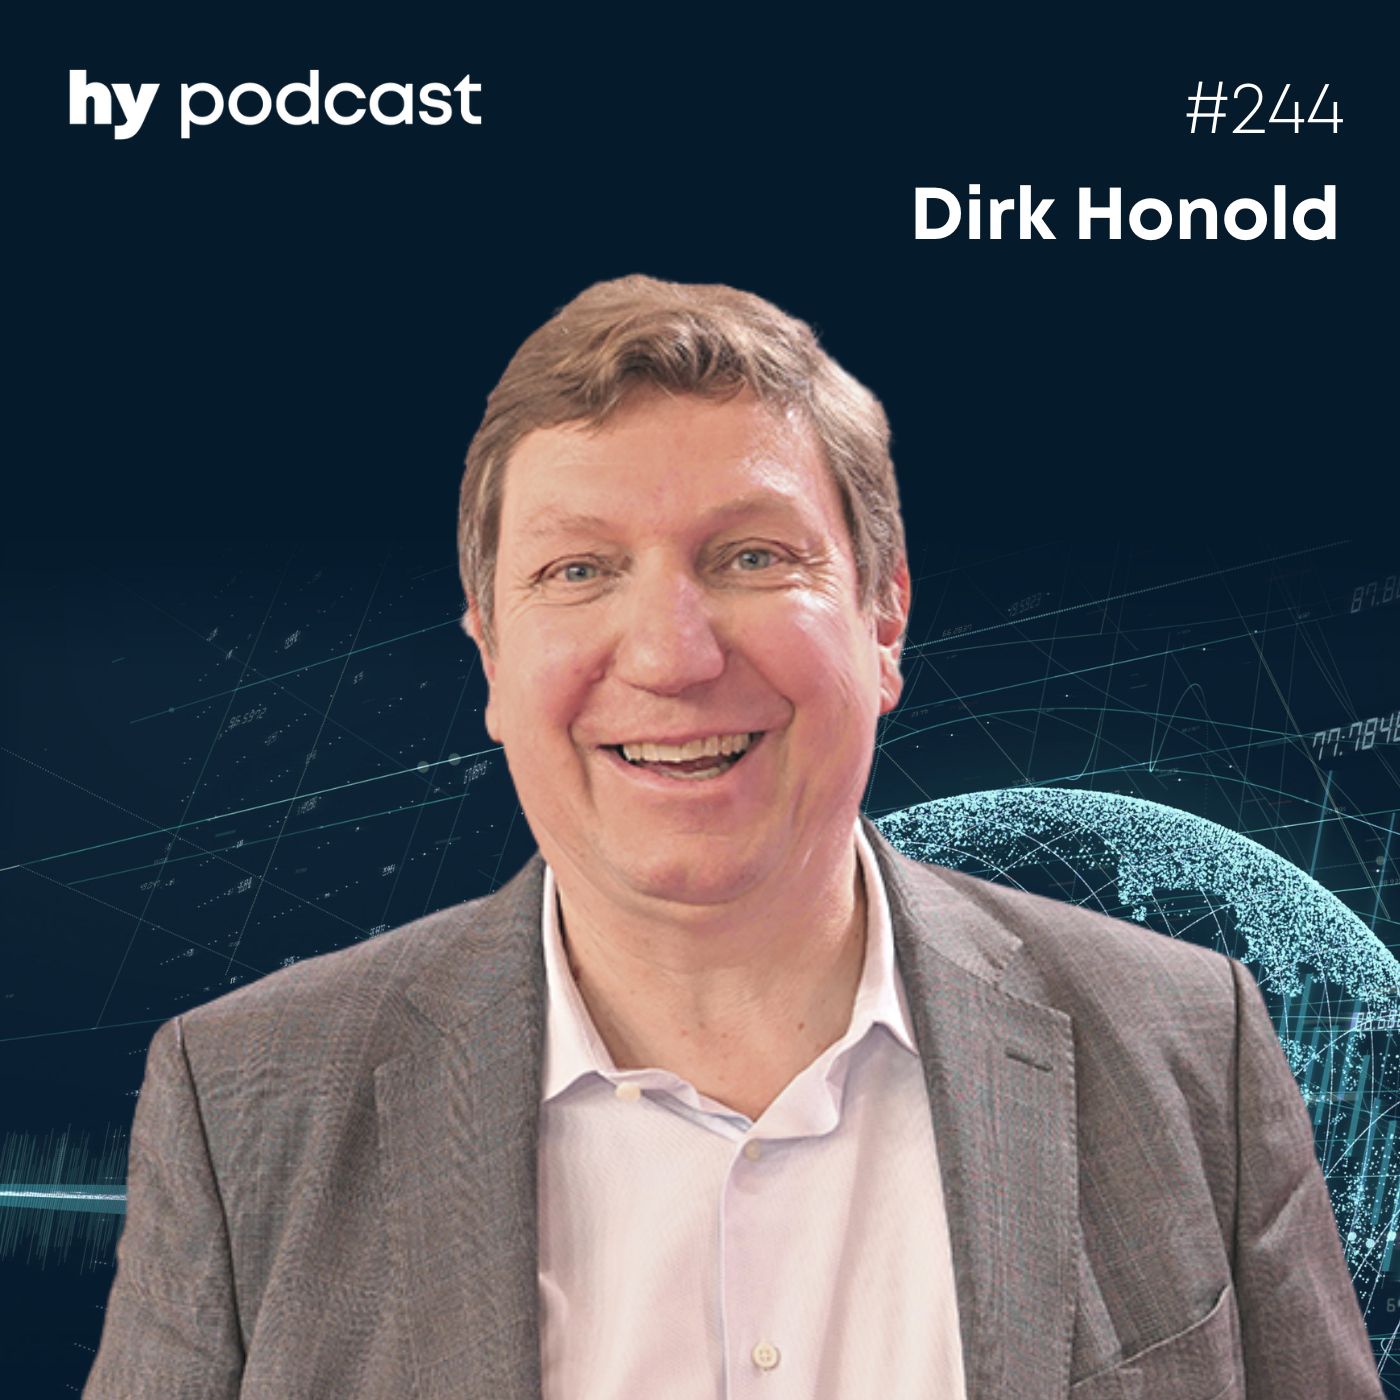 Folge 244 mit Dirk Honold: Mehr Gründungsgeist in der Gesellschaft entfachen